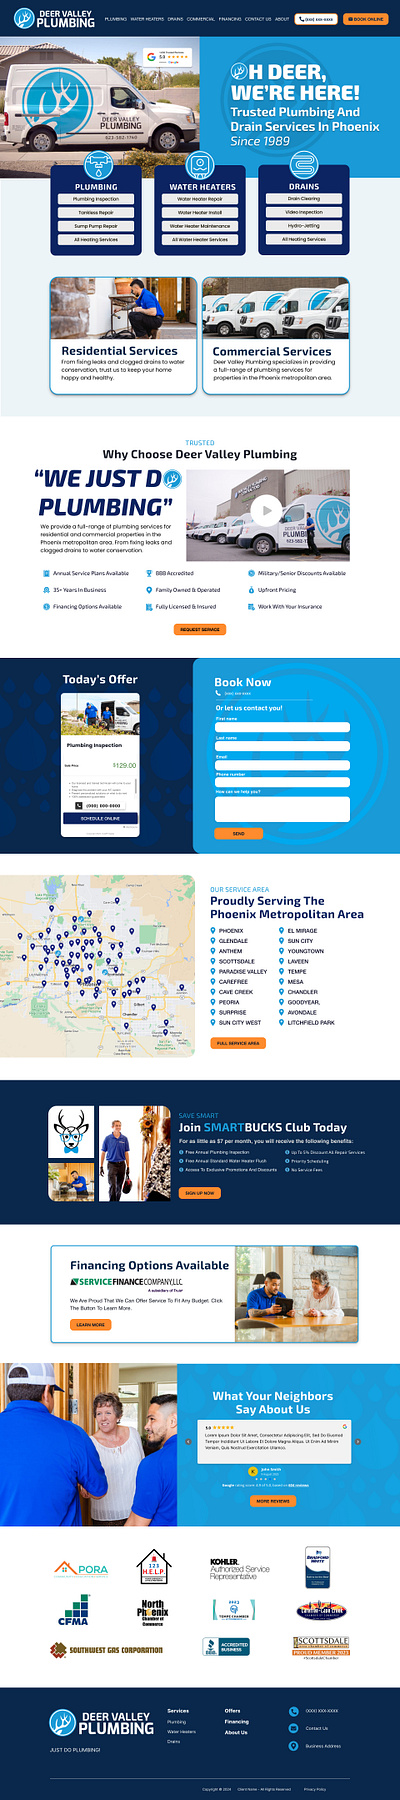 Plumbing services website